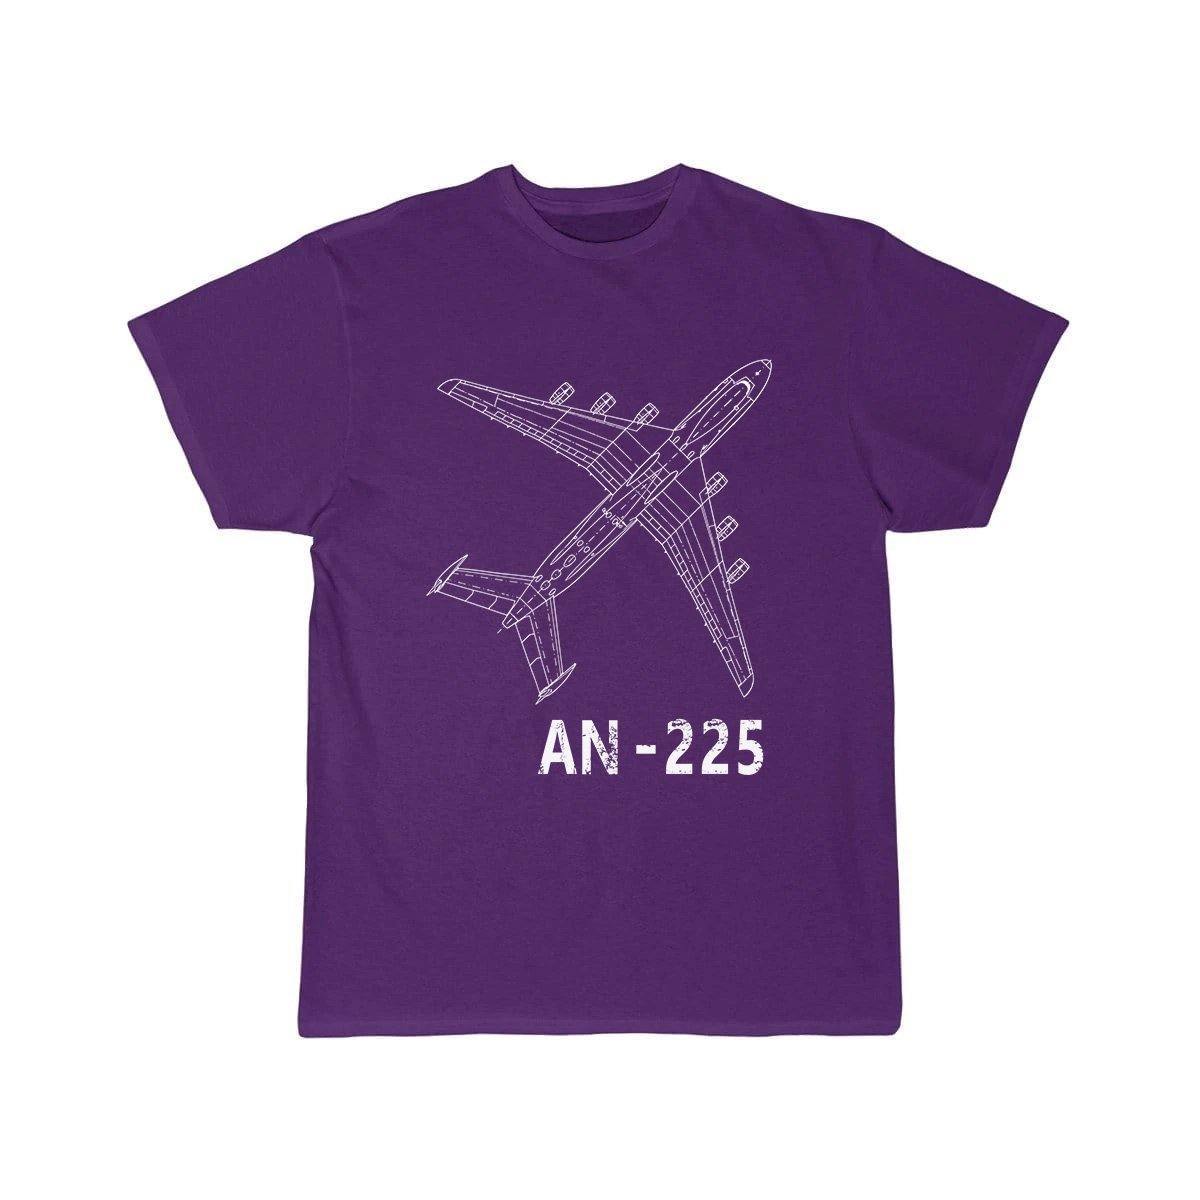 AN225 DESIGNED T SHIRT THE AV8R